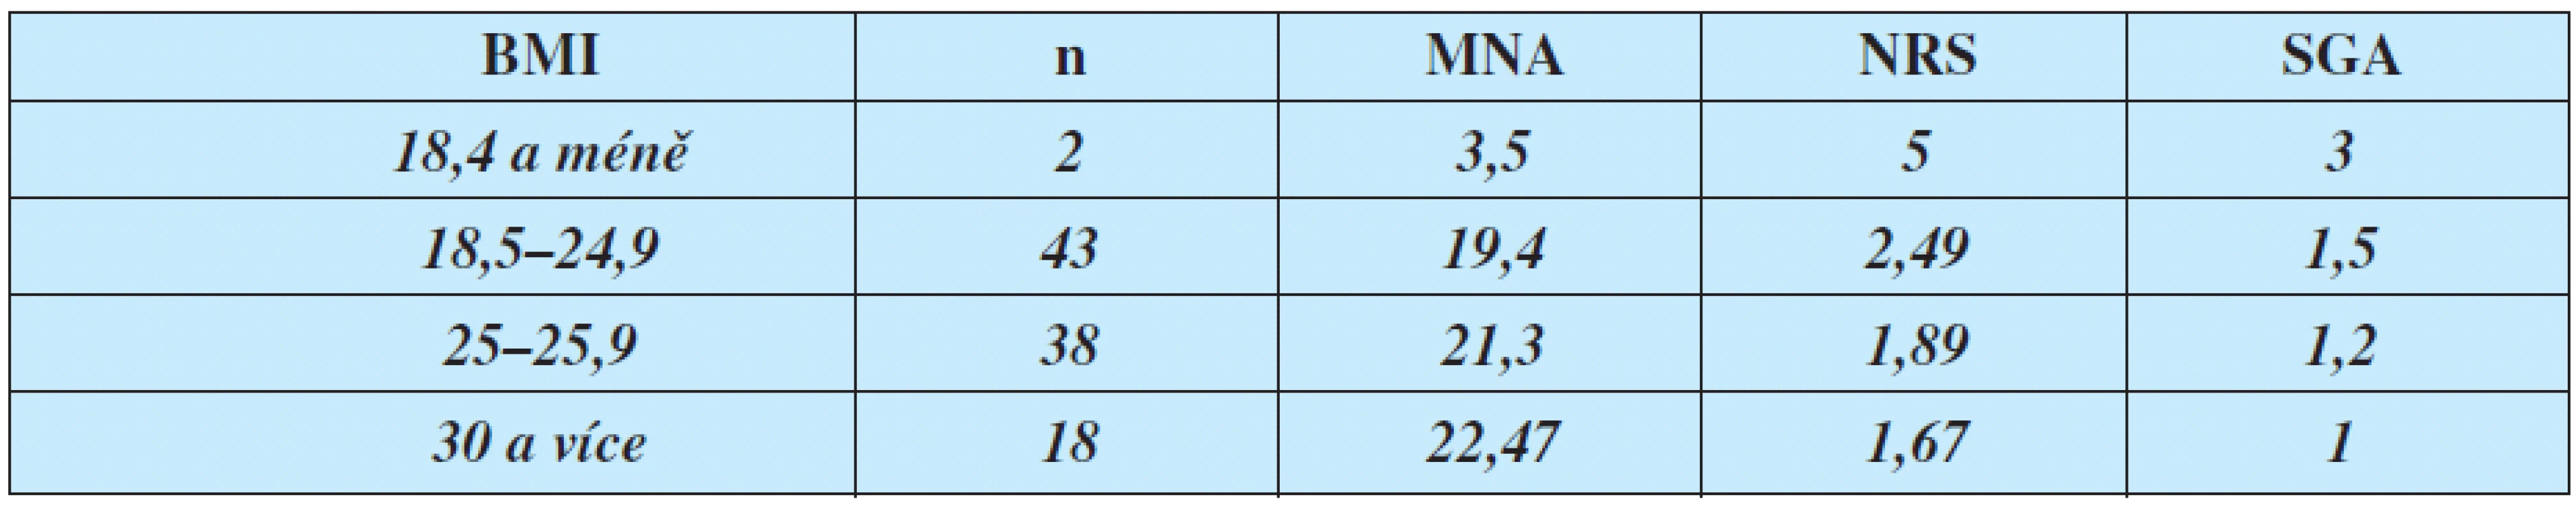 Srovnání BMI a průměrných výsledků testů MNA, NRS, SGA